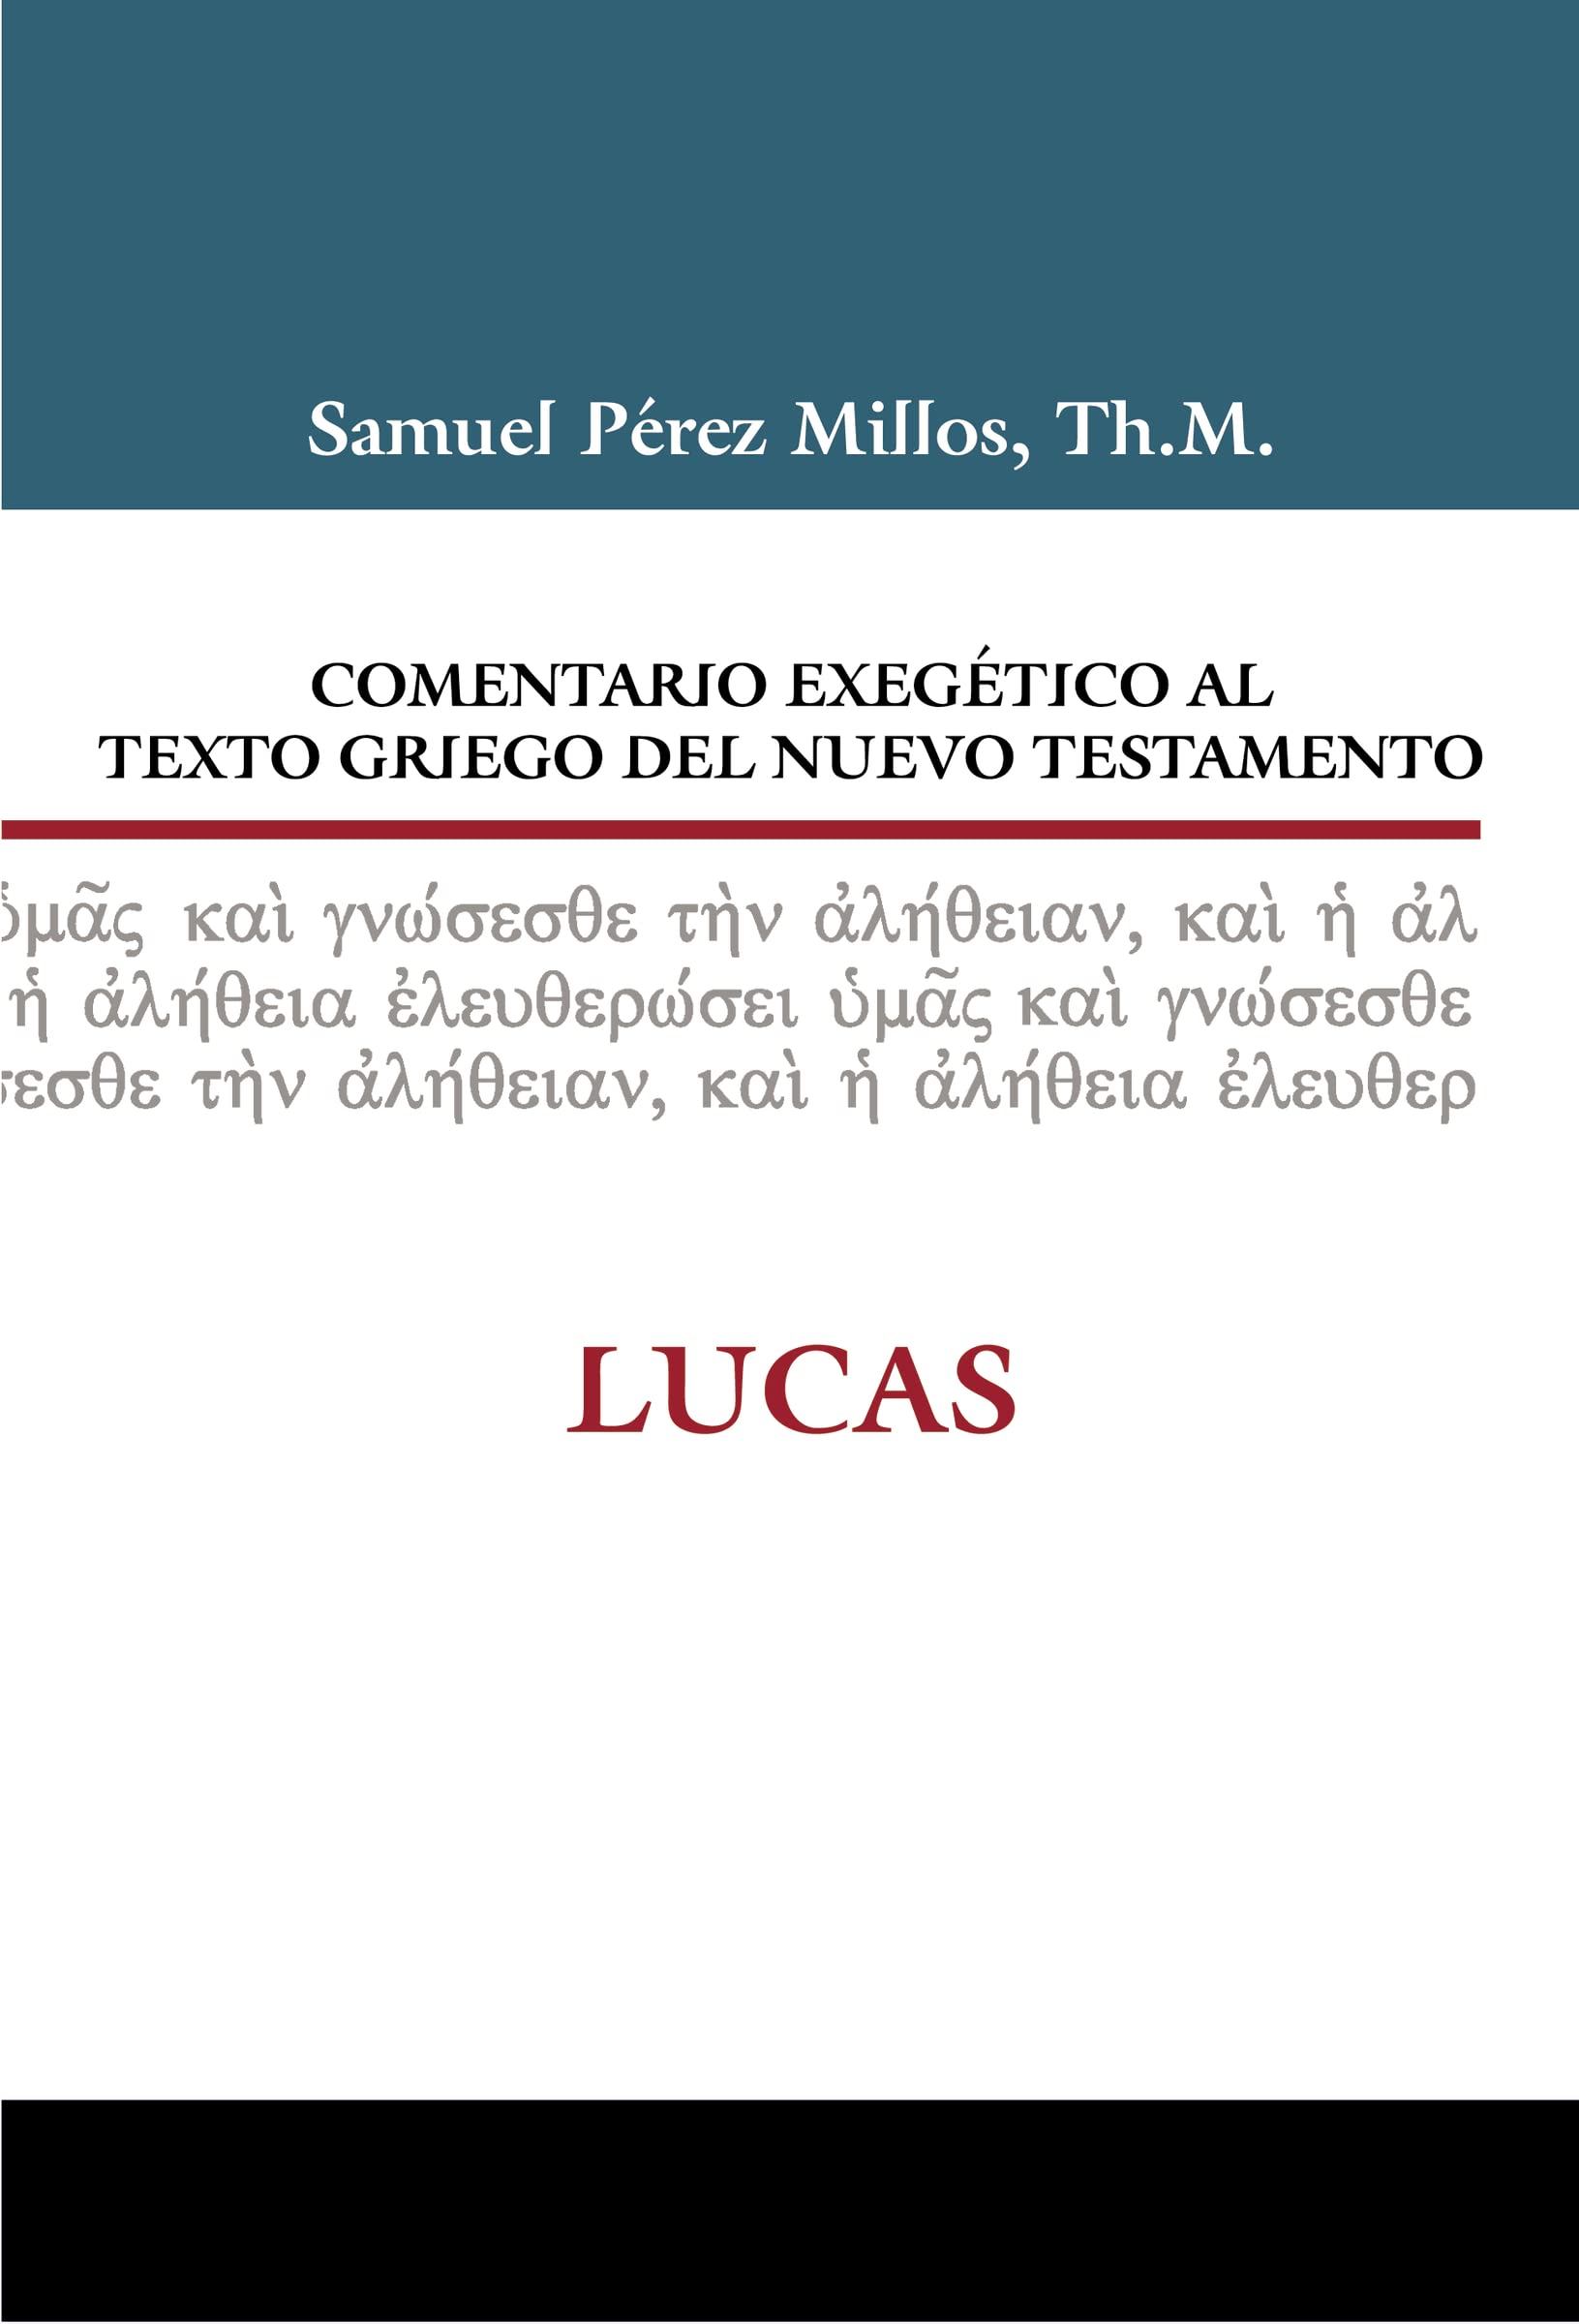 Comentario exegético al texto griego del Nuevo Testamento: Lucas (Spanish Edition)